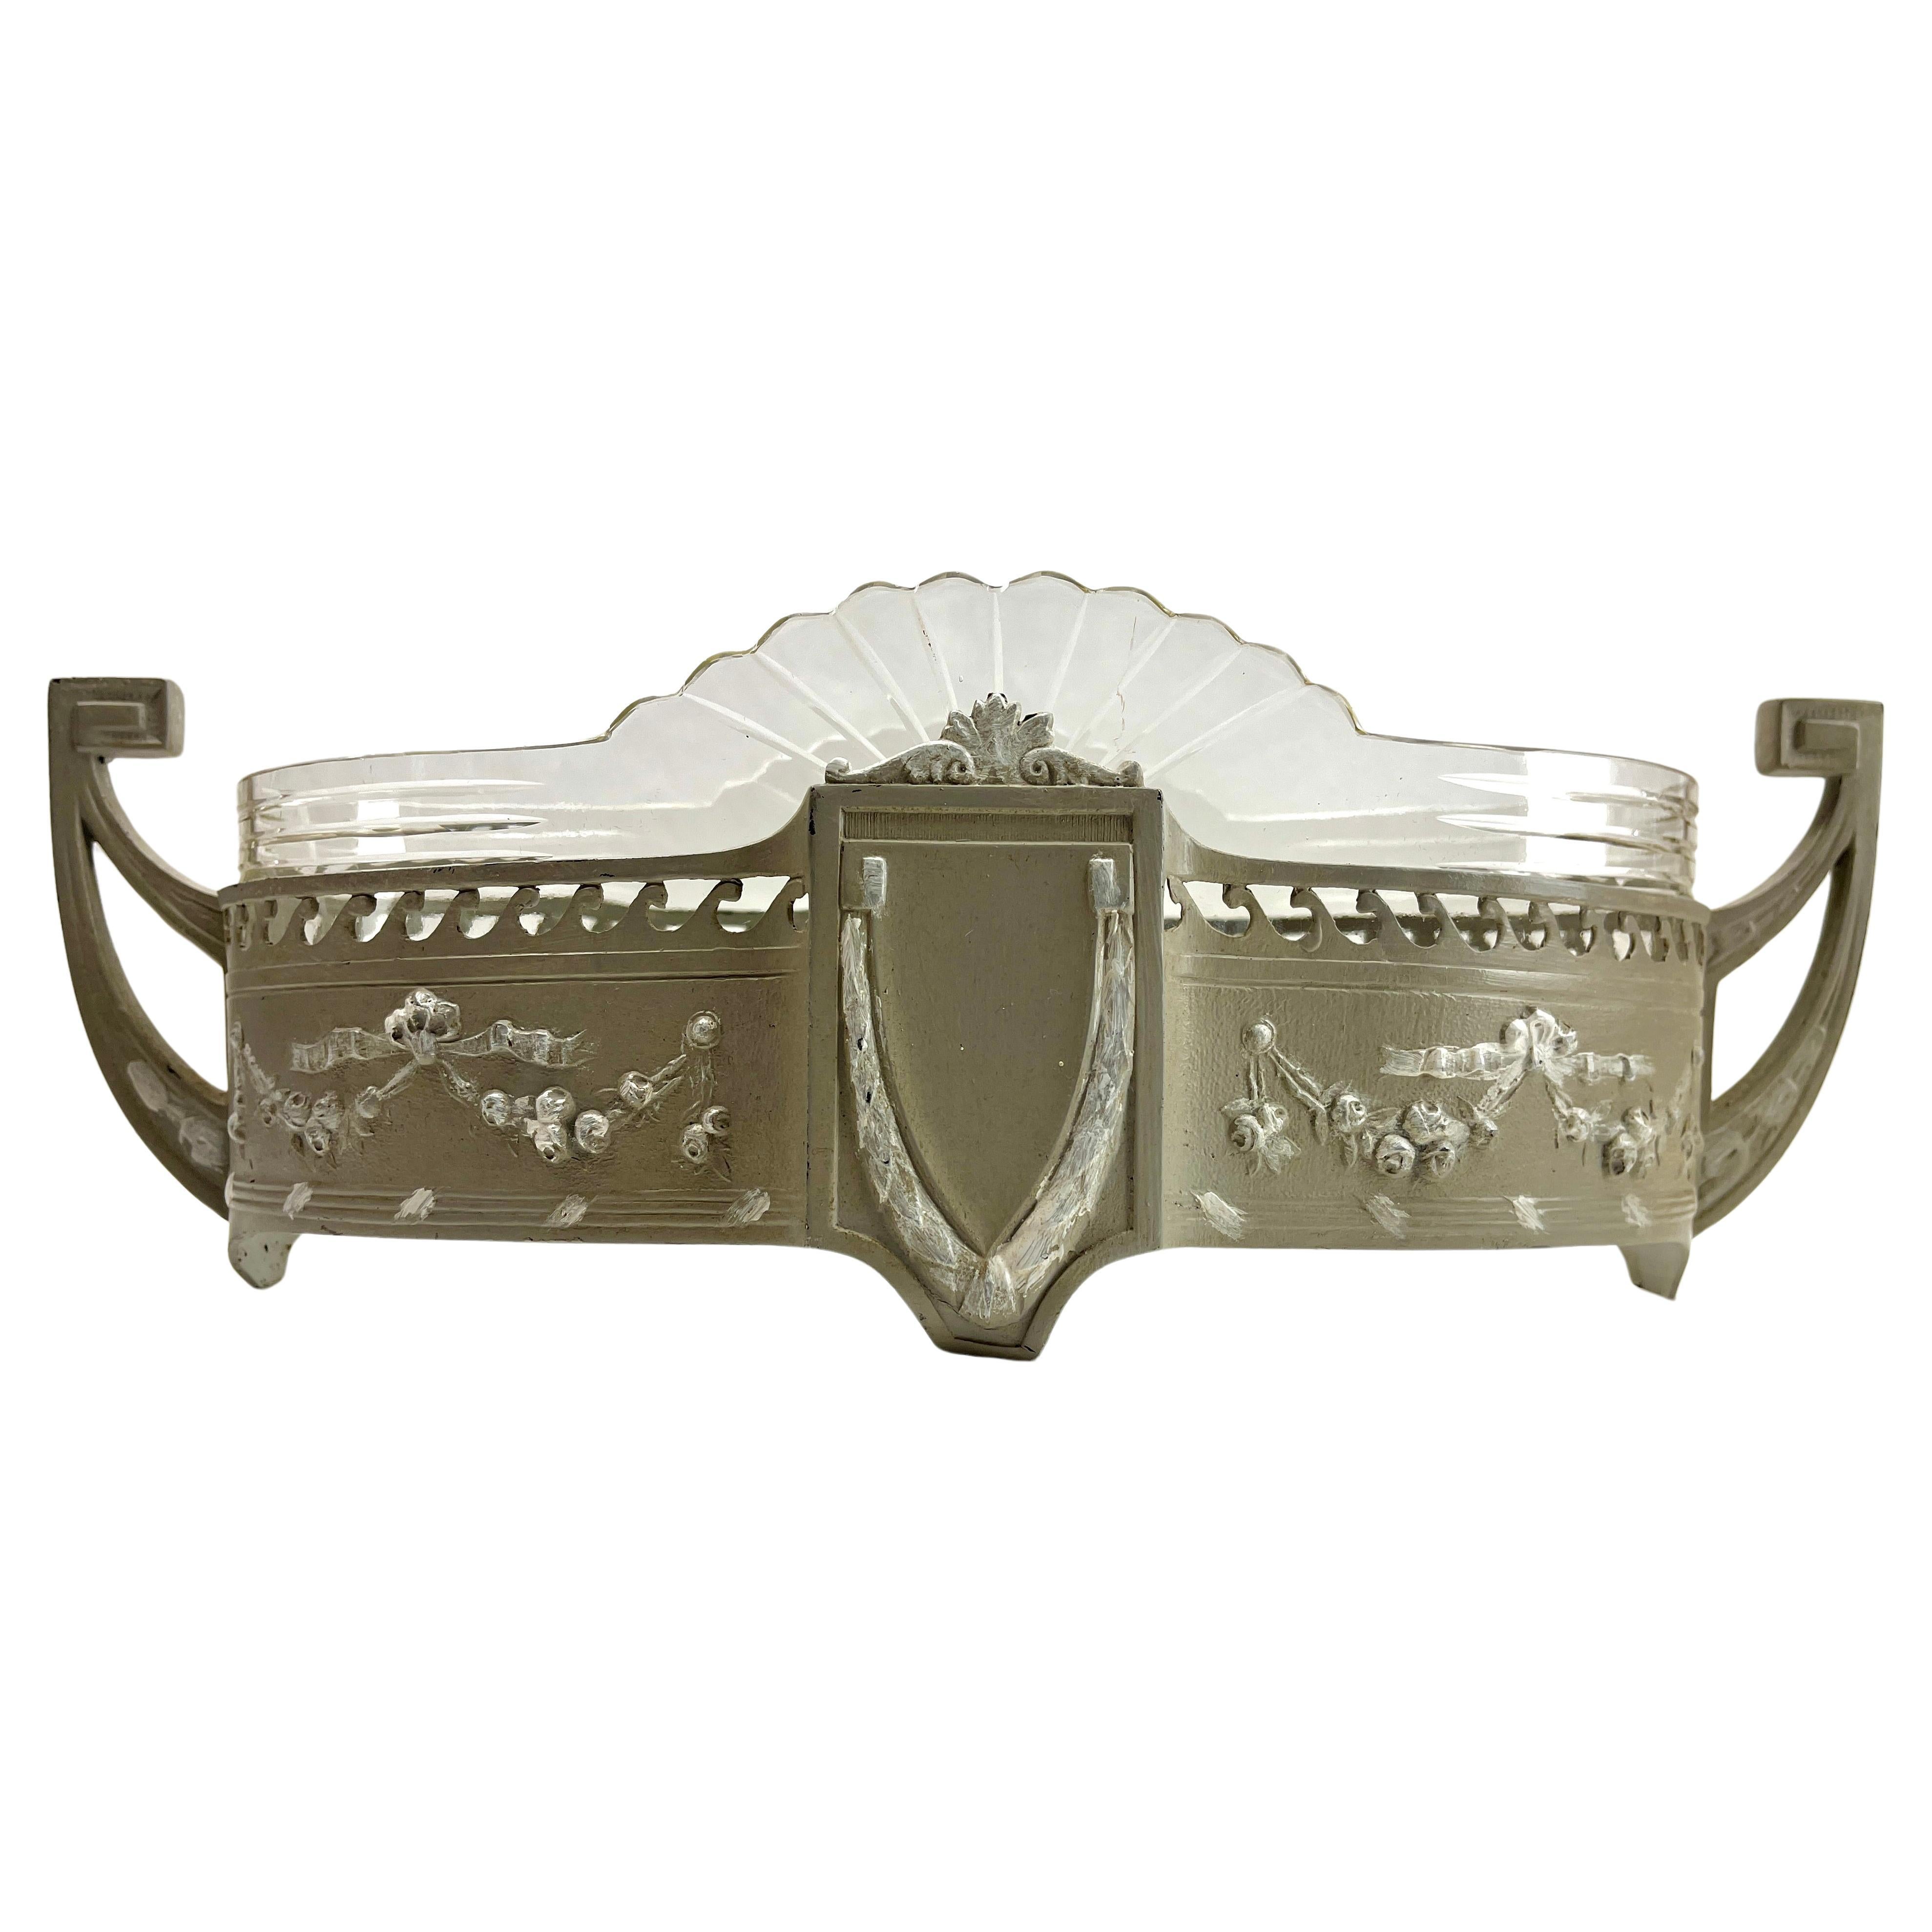 WMF Art Nouveau Jardinair whit Original Cut Glass Basket For Sale